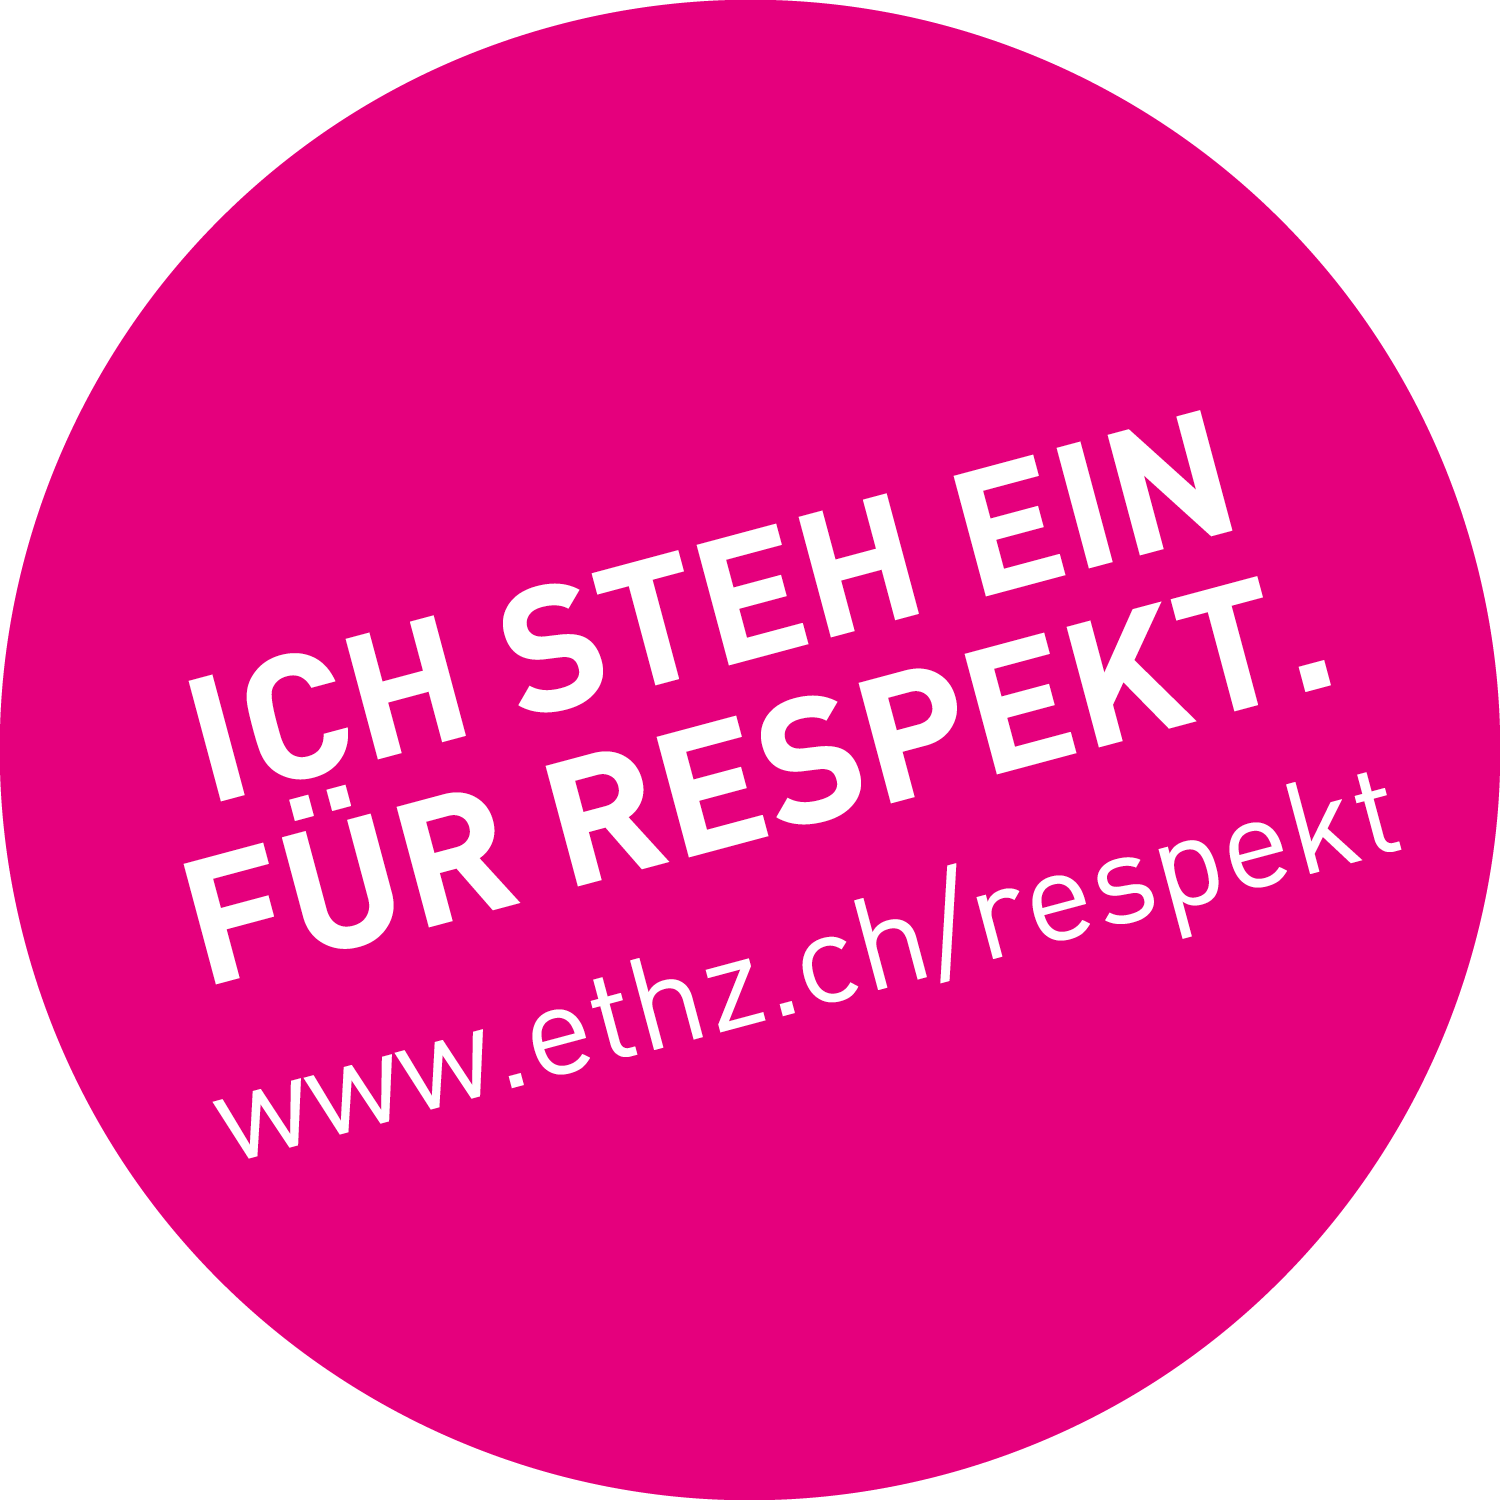 Pinkfarbener Punkt mit weissem Text "Ich steh ein für Respekt." www.ethz.ch/respekt